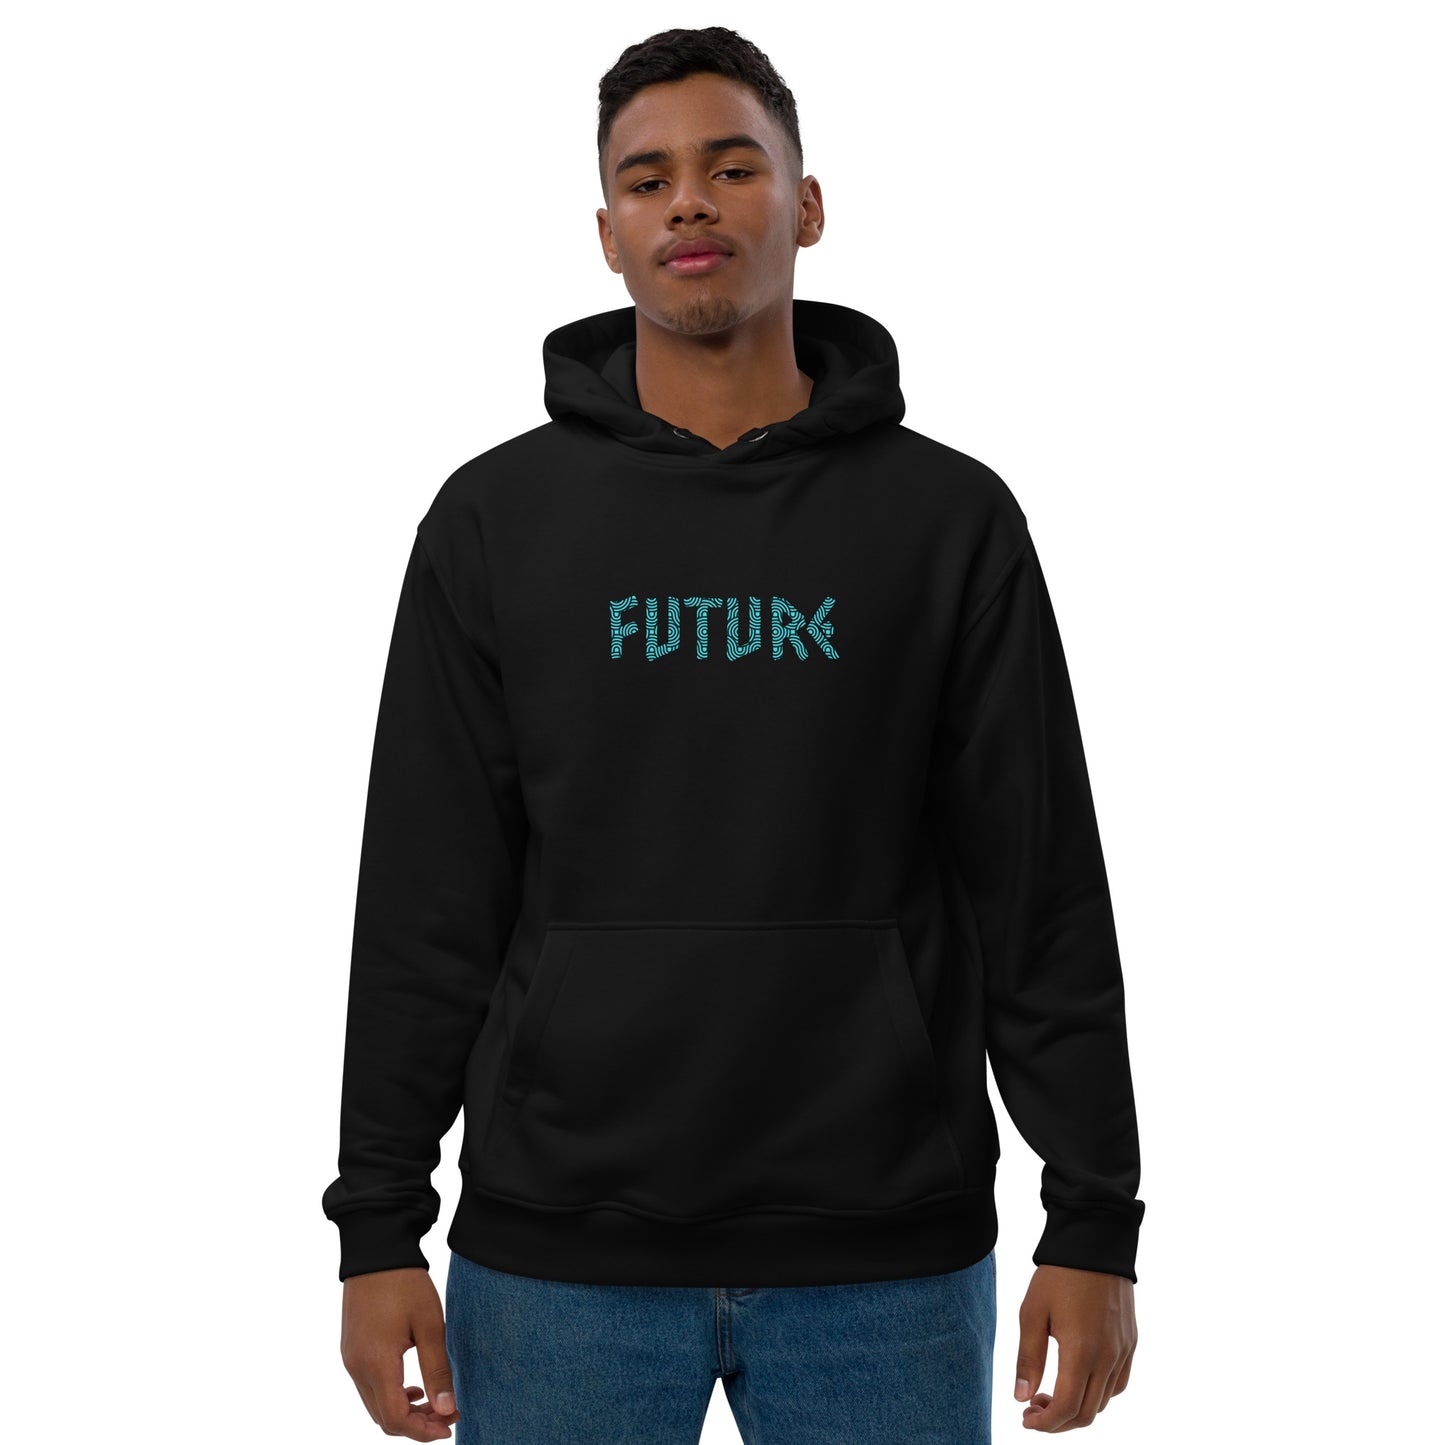 Future! Premium eco hoodie